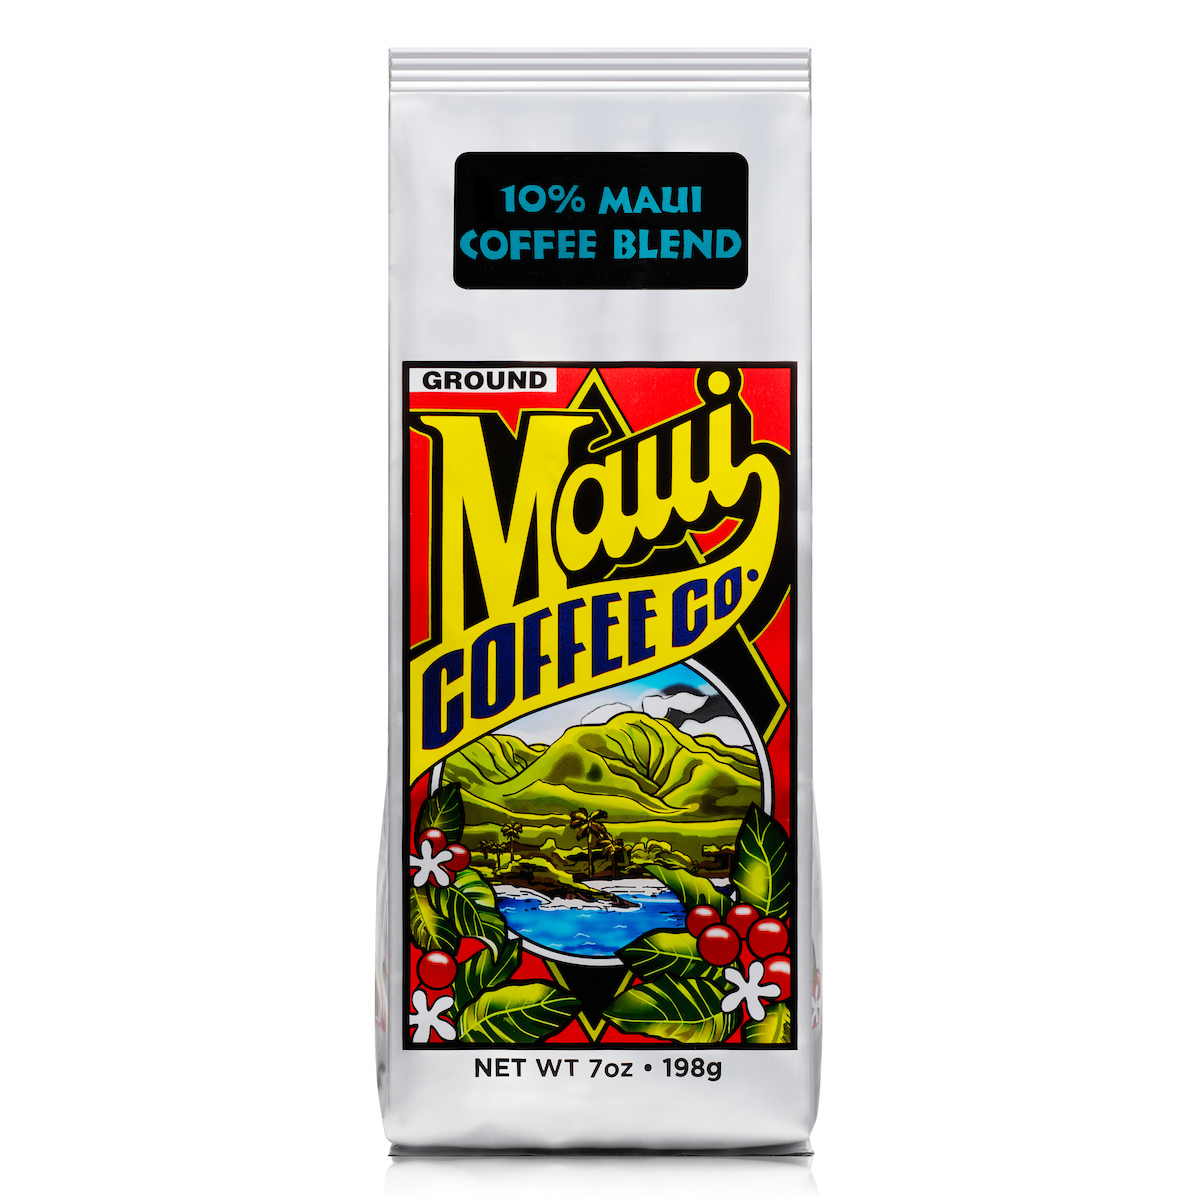 Maui Coffee Blend ground